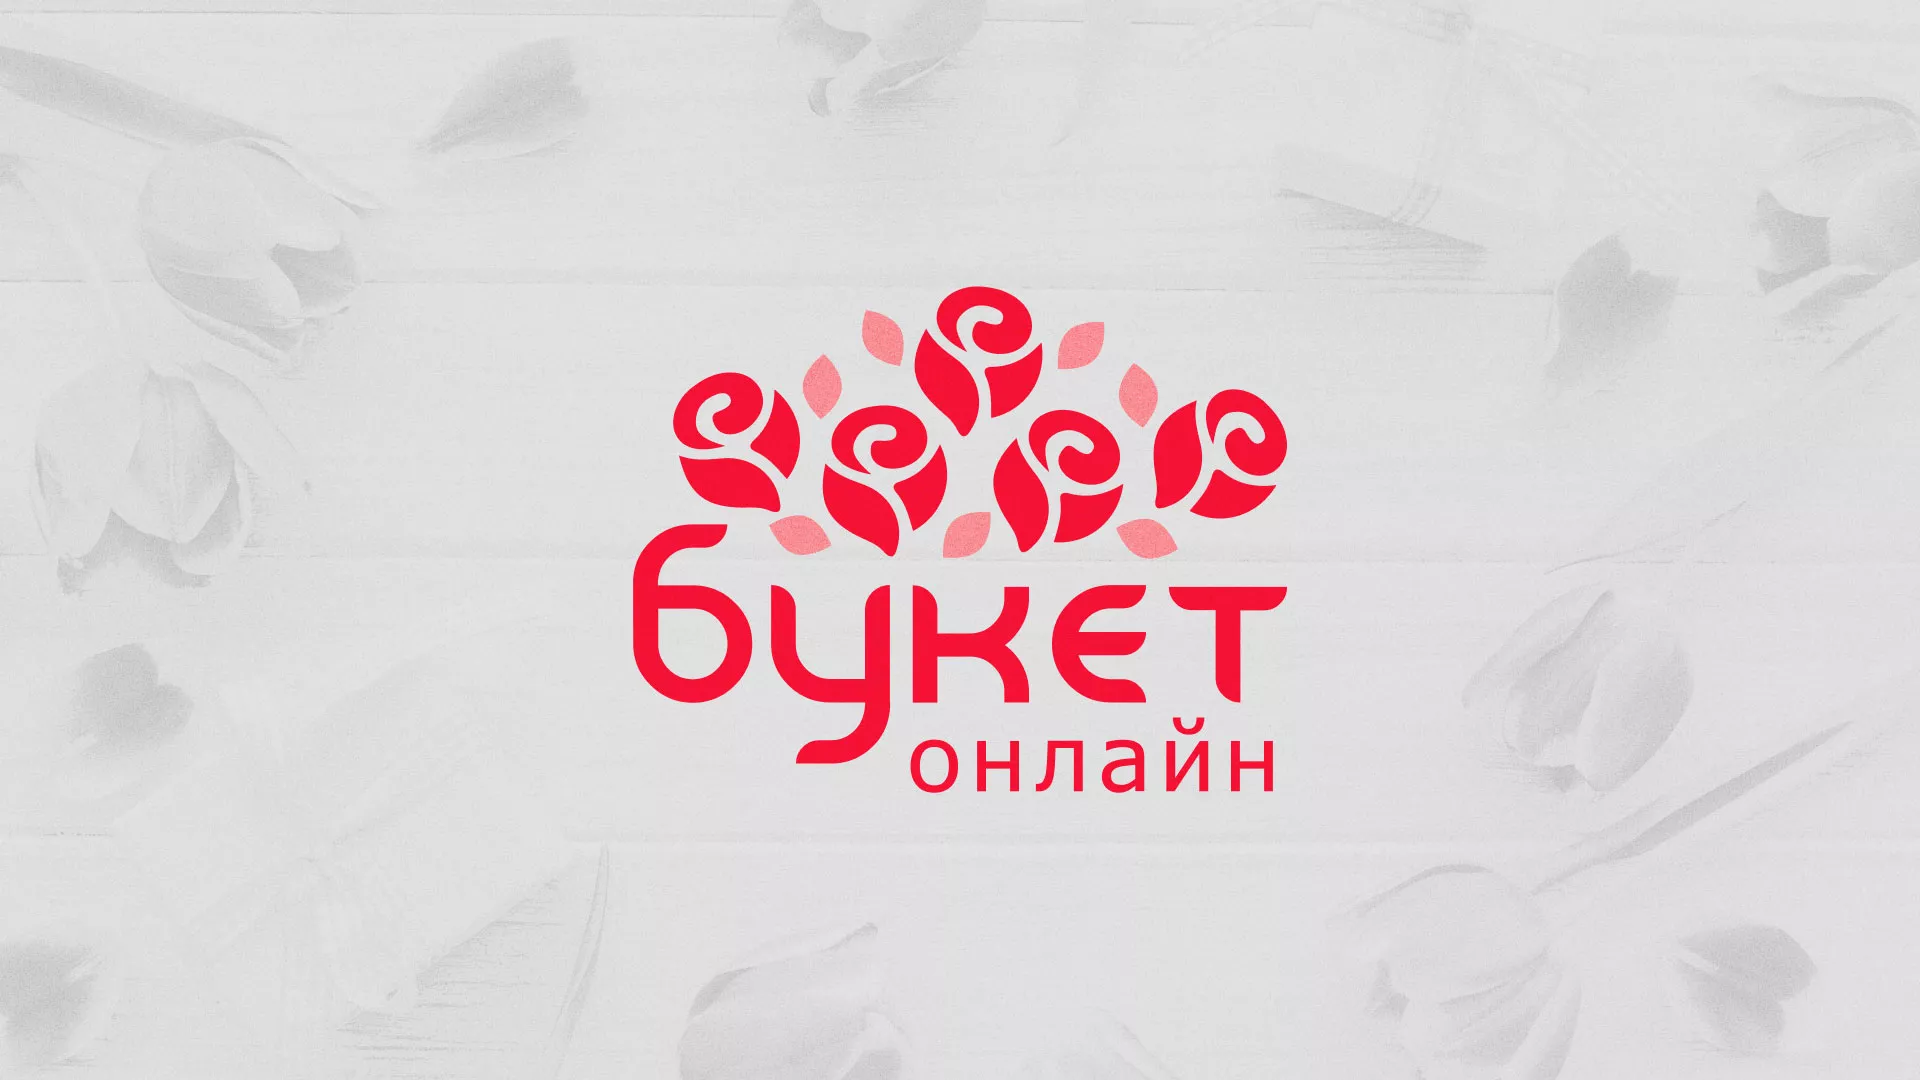 Создание интернет-магазина «Букет-онлайн» по цветам в Каменногорске